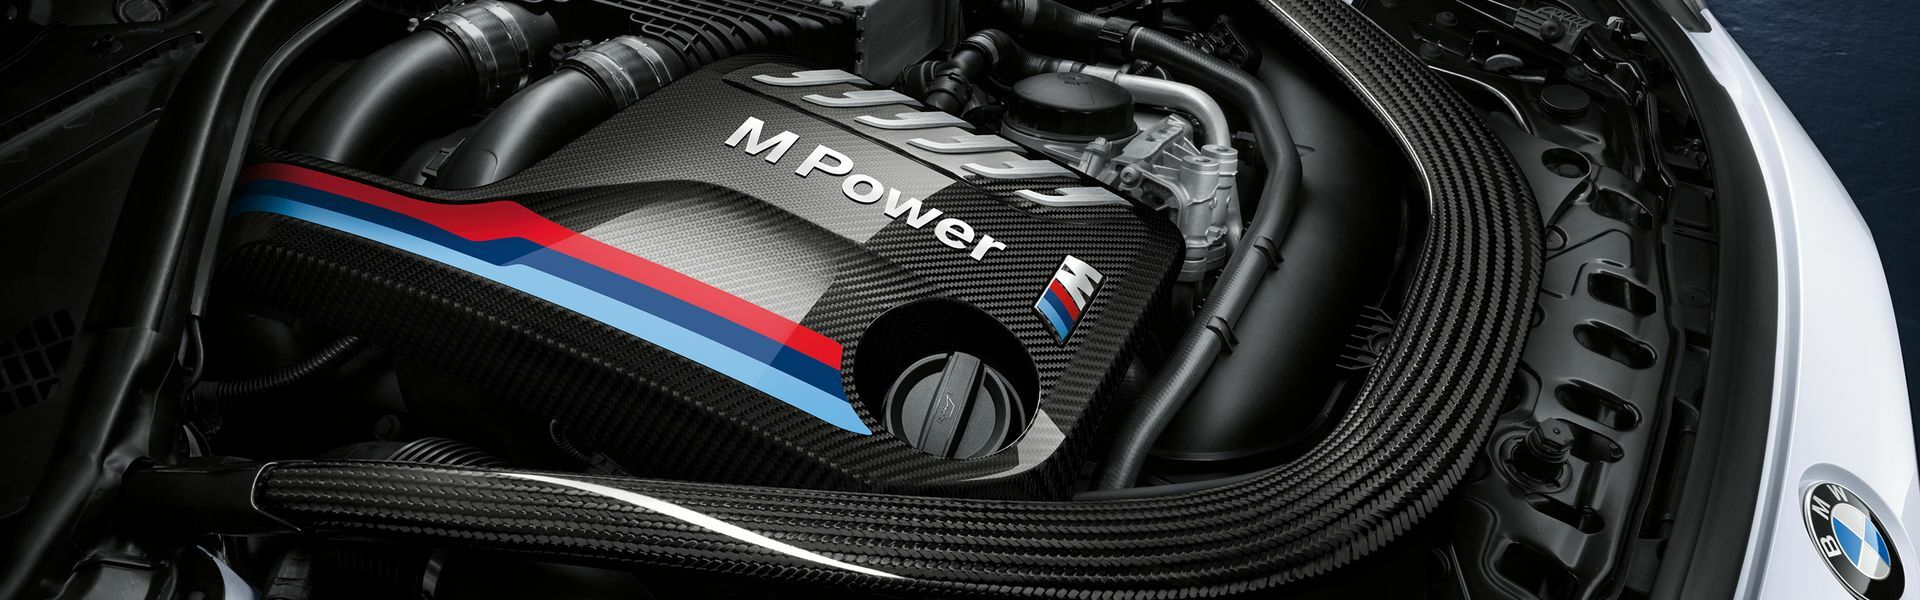 Zvýšení výkonu/ Softwarové úpravy/ Drobné performance díly pro automobil Porsche Panamera GTS / Sport Turismo 971